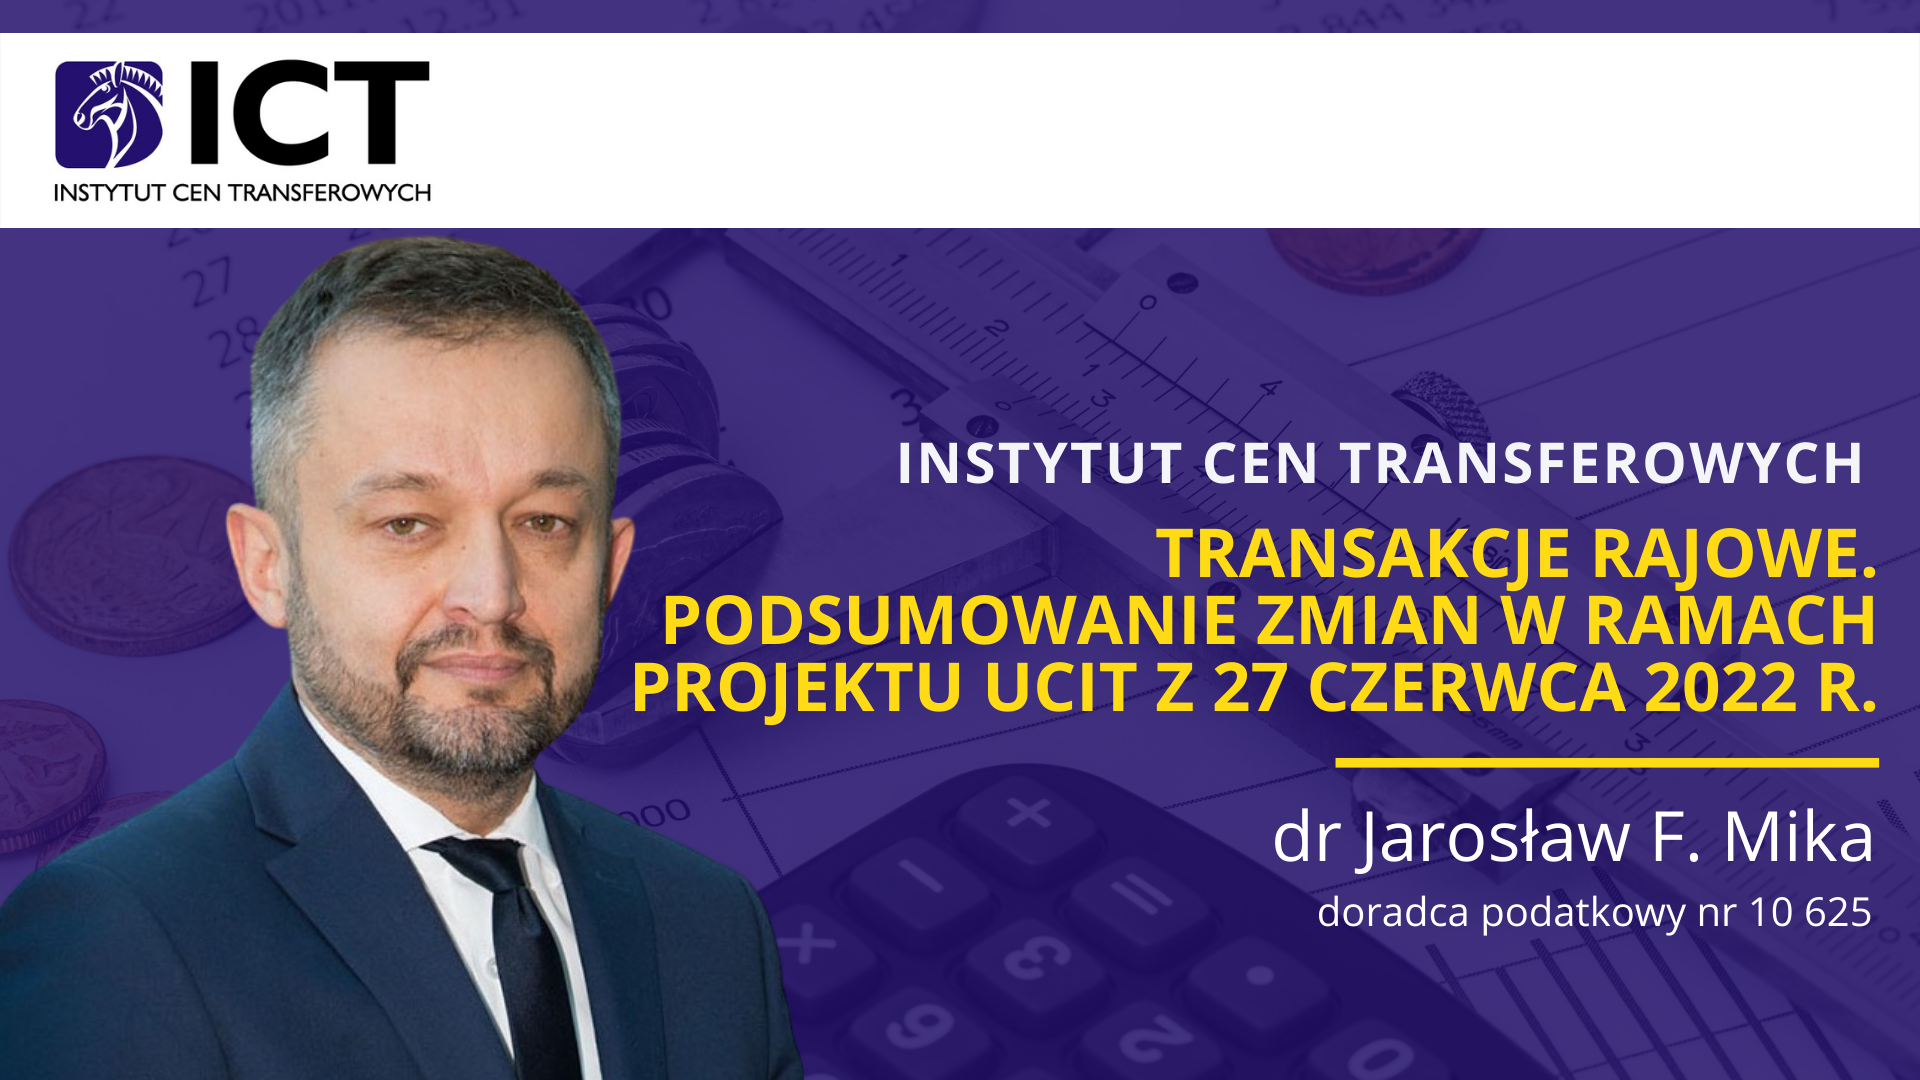 Transakcje rajowe – podsumowanie zmian w ramach projektu uCIT z 27 czerwca 2022 r.